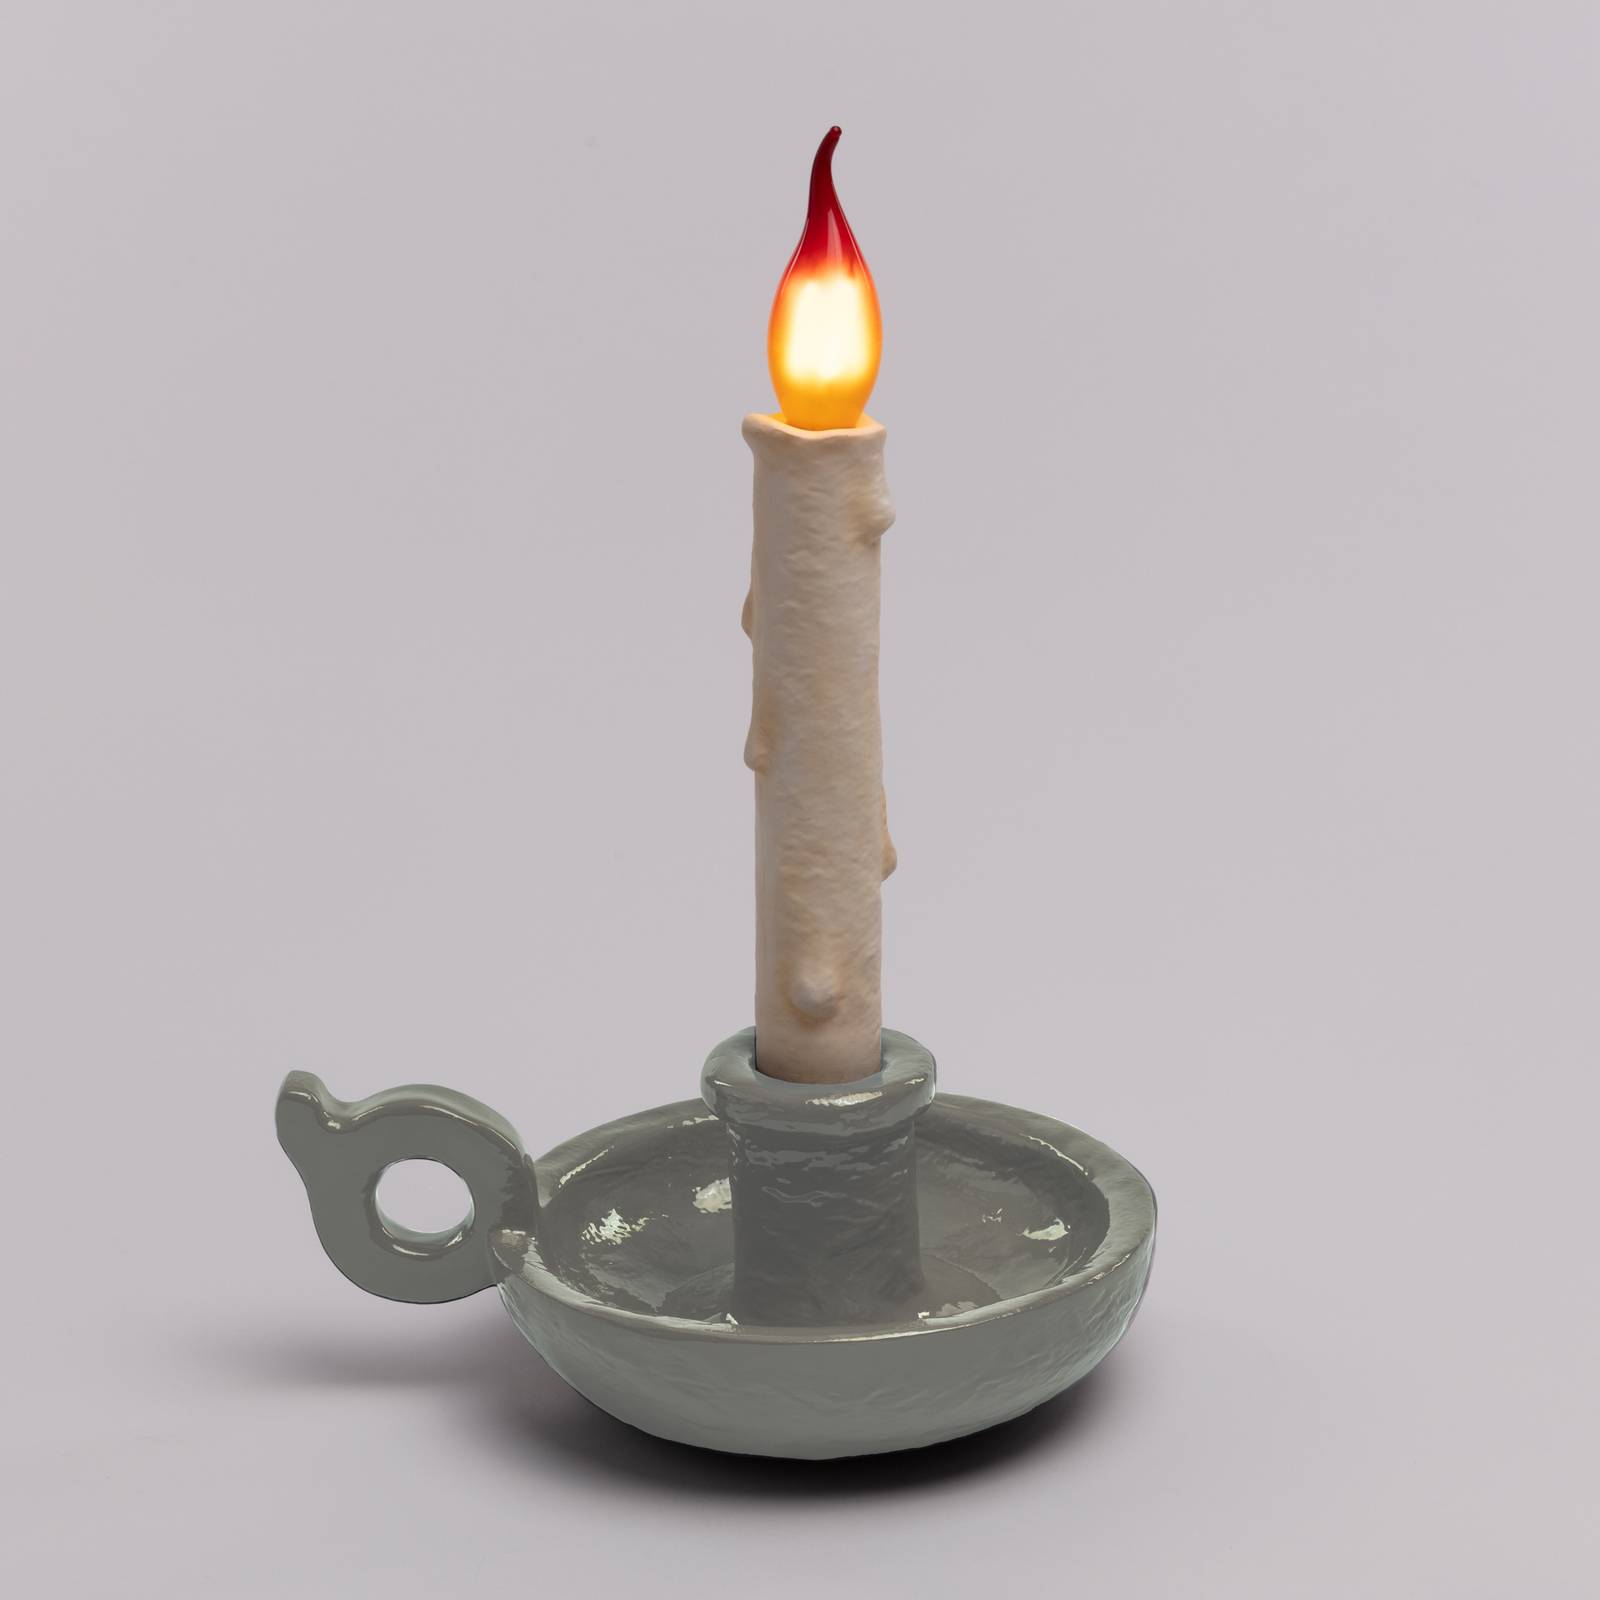 SELETTI LED deko stolní lampa Grimm Bugia tvar svíčky šedá